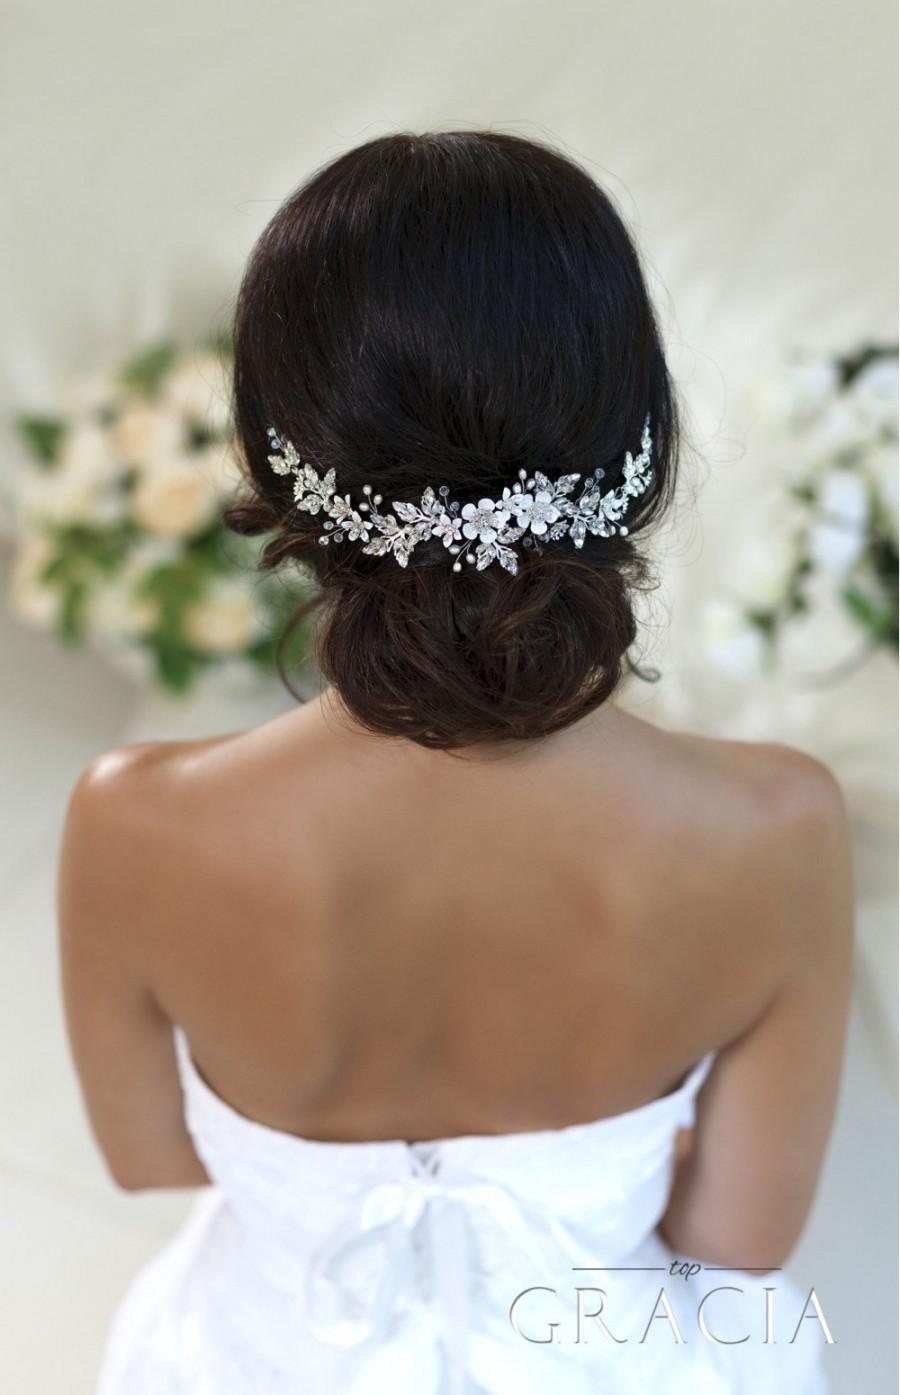 زفاف - Wedding hair accessories Bridal hair piece Wedding headband Crystal hairpiece Rhinestone headpiece Flower Bridal Headpiece With Crystals